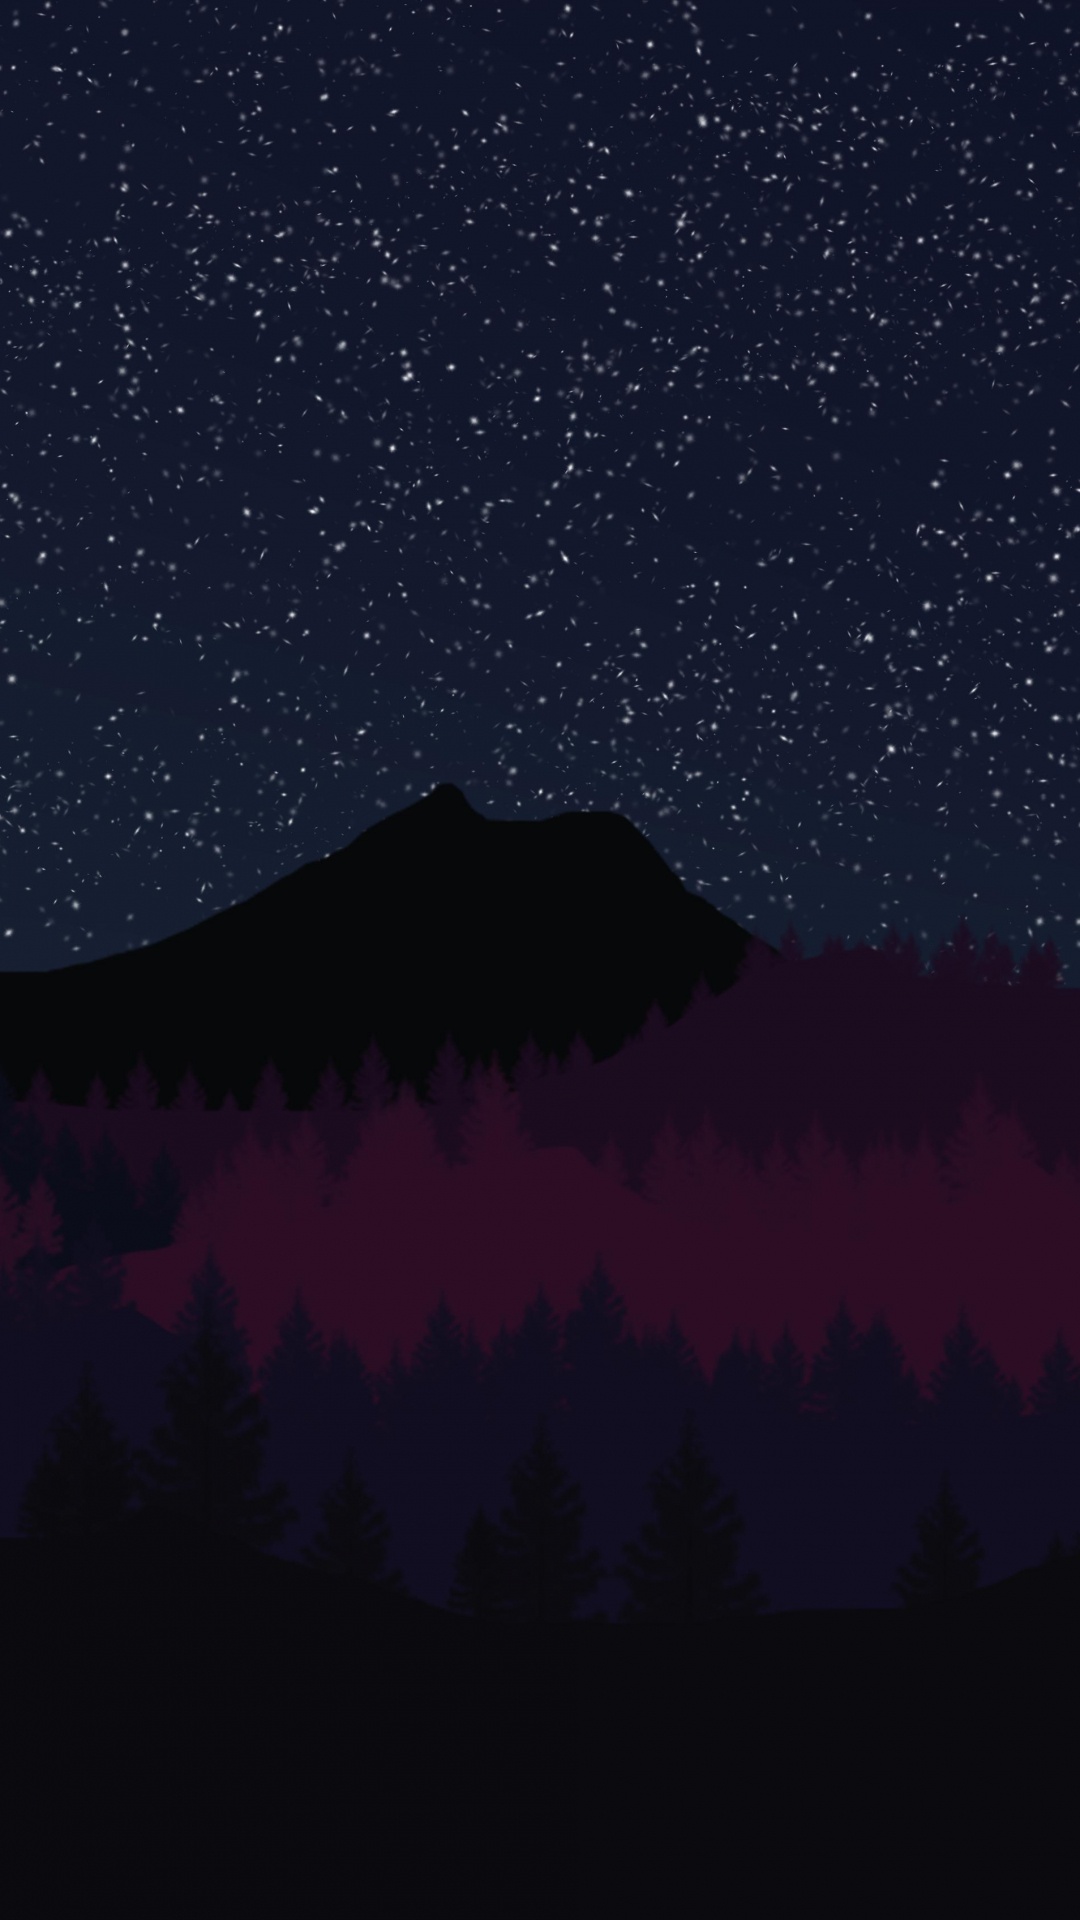 Silueta de Árboles Bajo la Noche Estrellada. Wallpaper in 1080x1920 Resolution